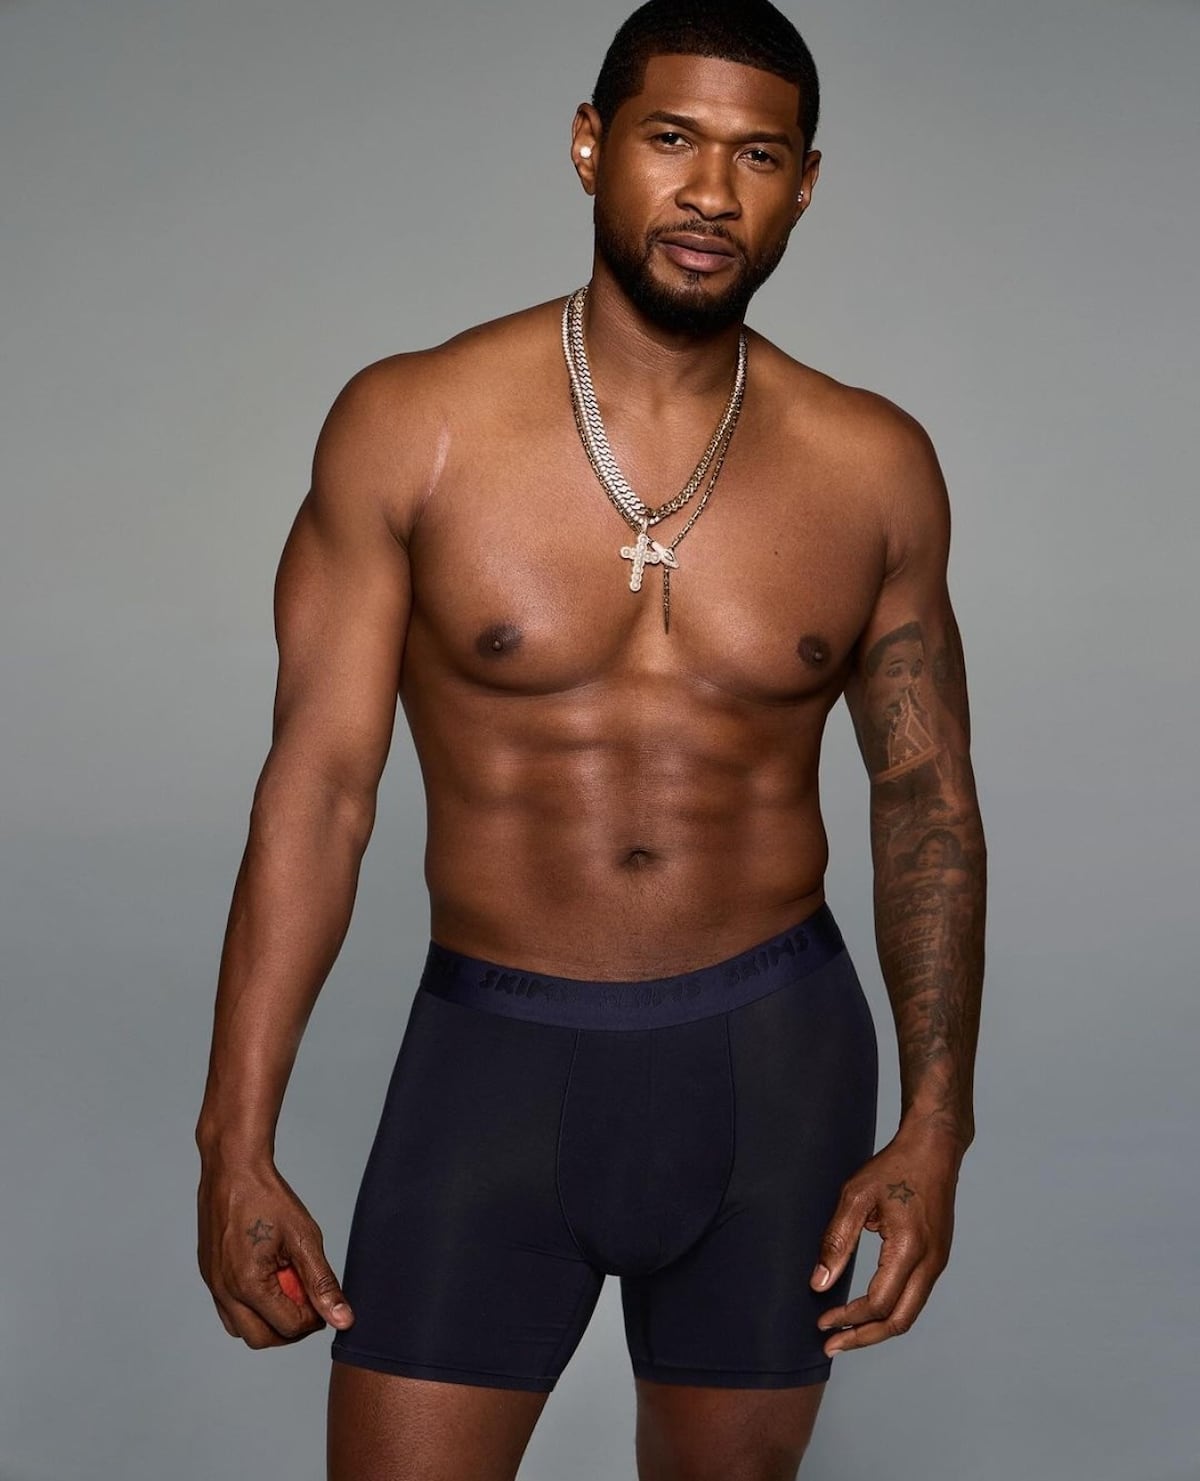 Así luce Usher, de 45 años, en la nueva campaña de ropa interior de Skims